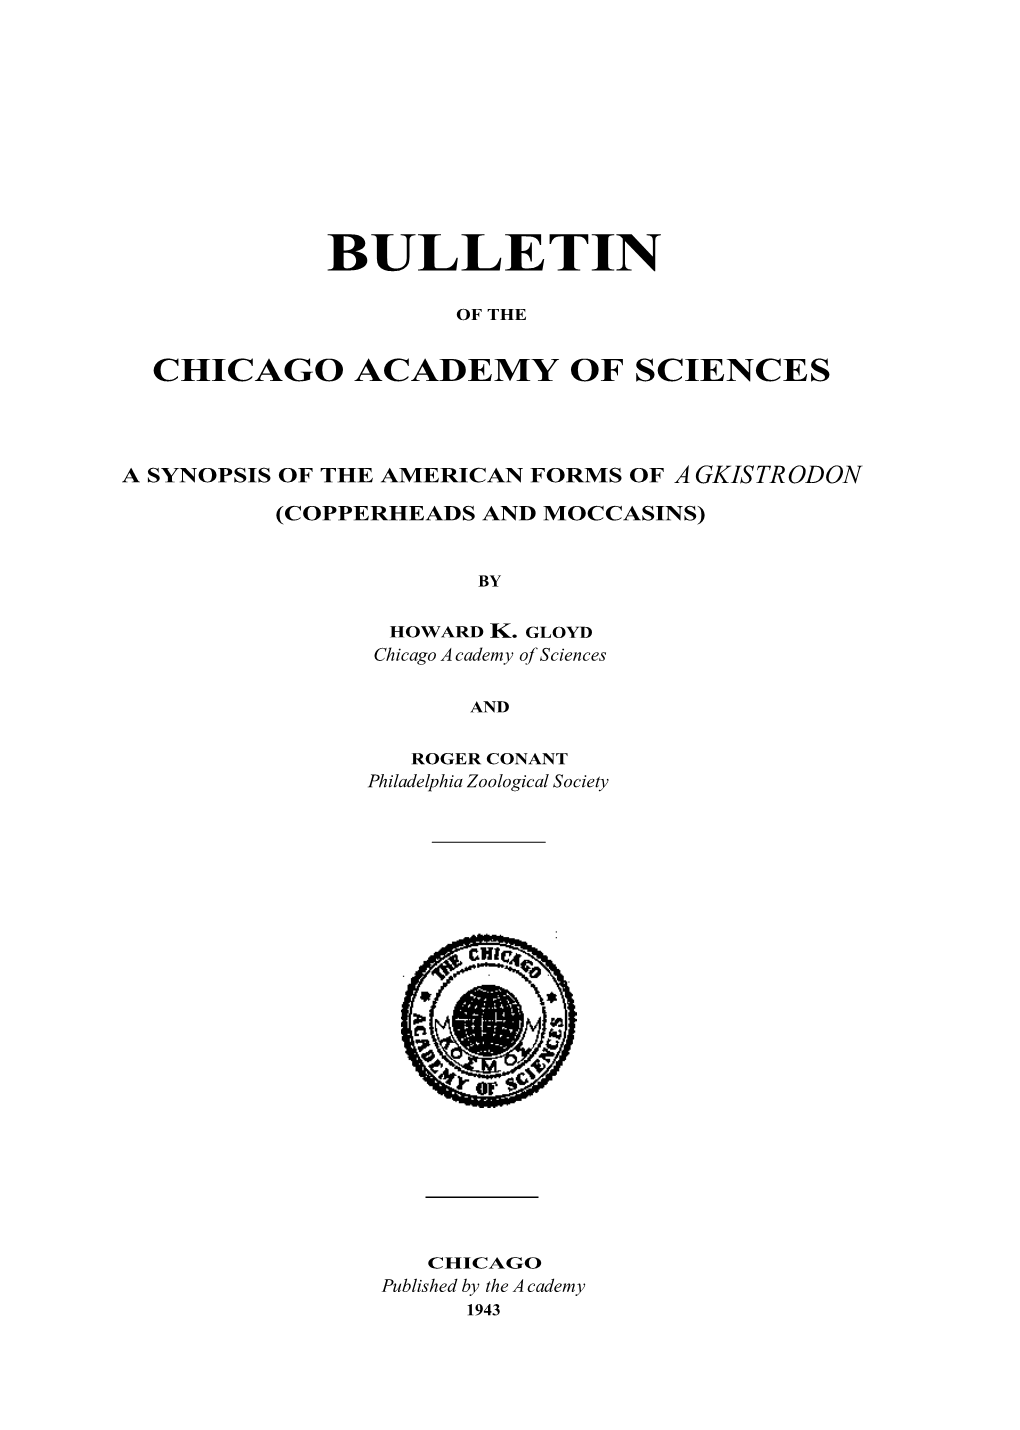 Chicago Academy of Sciences, Vol. 7, No. 2